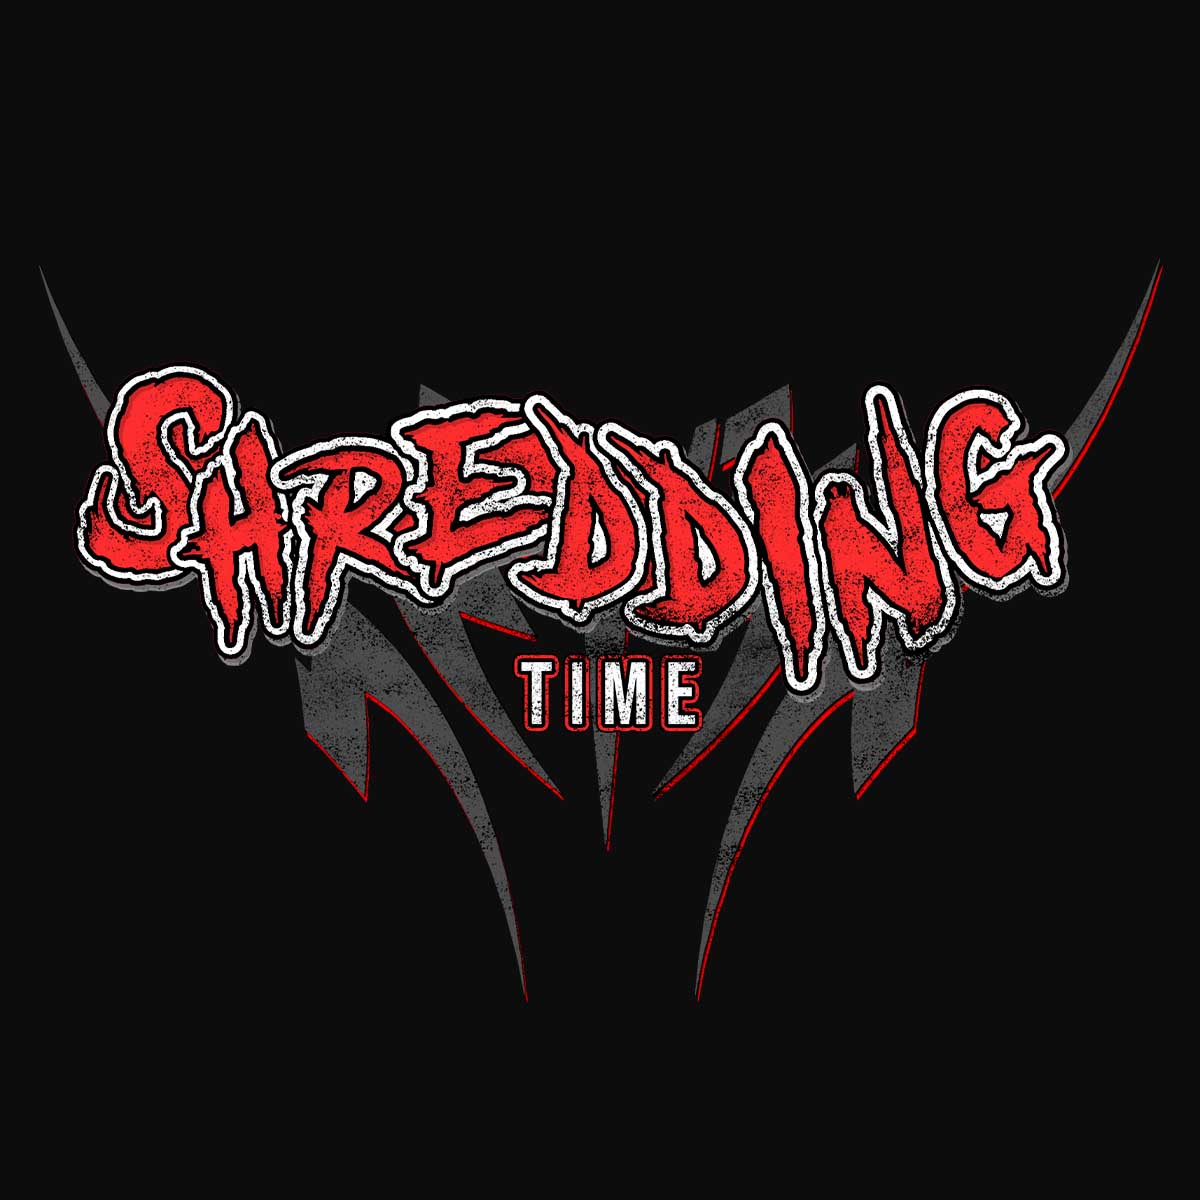 Shredding-preview-black